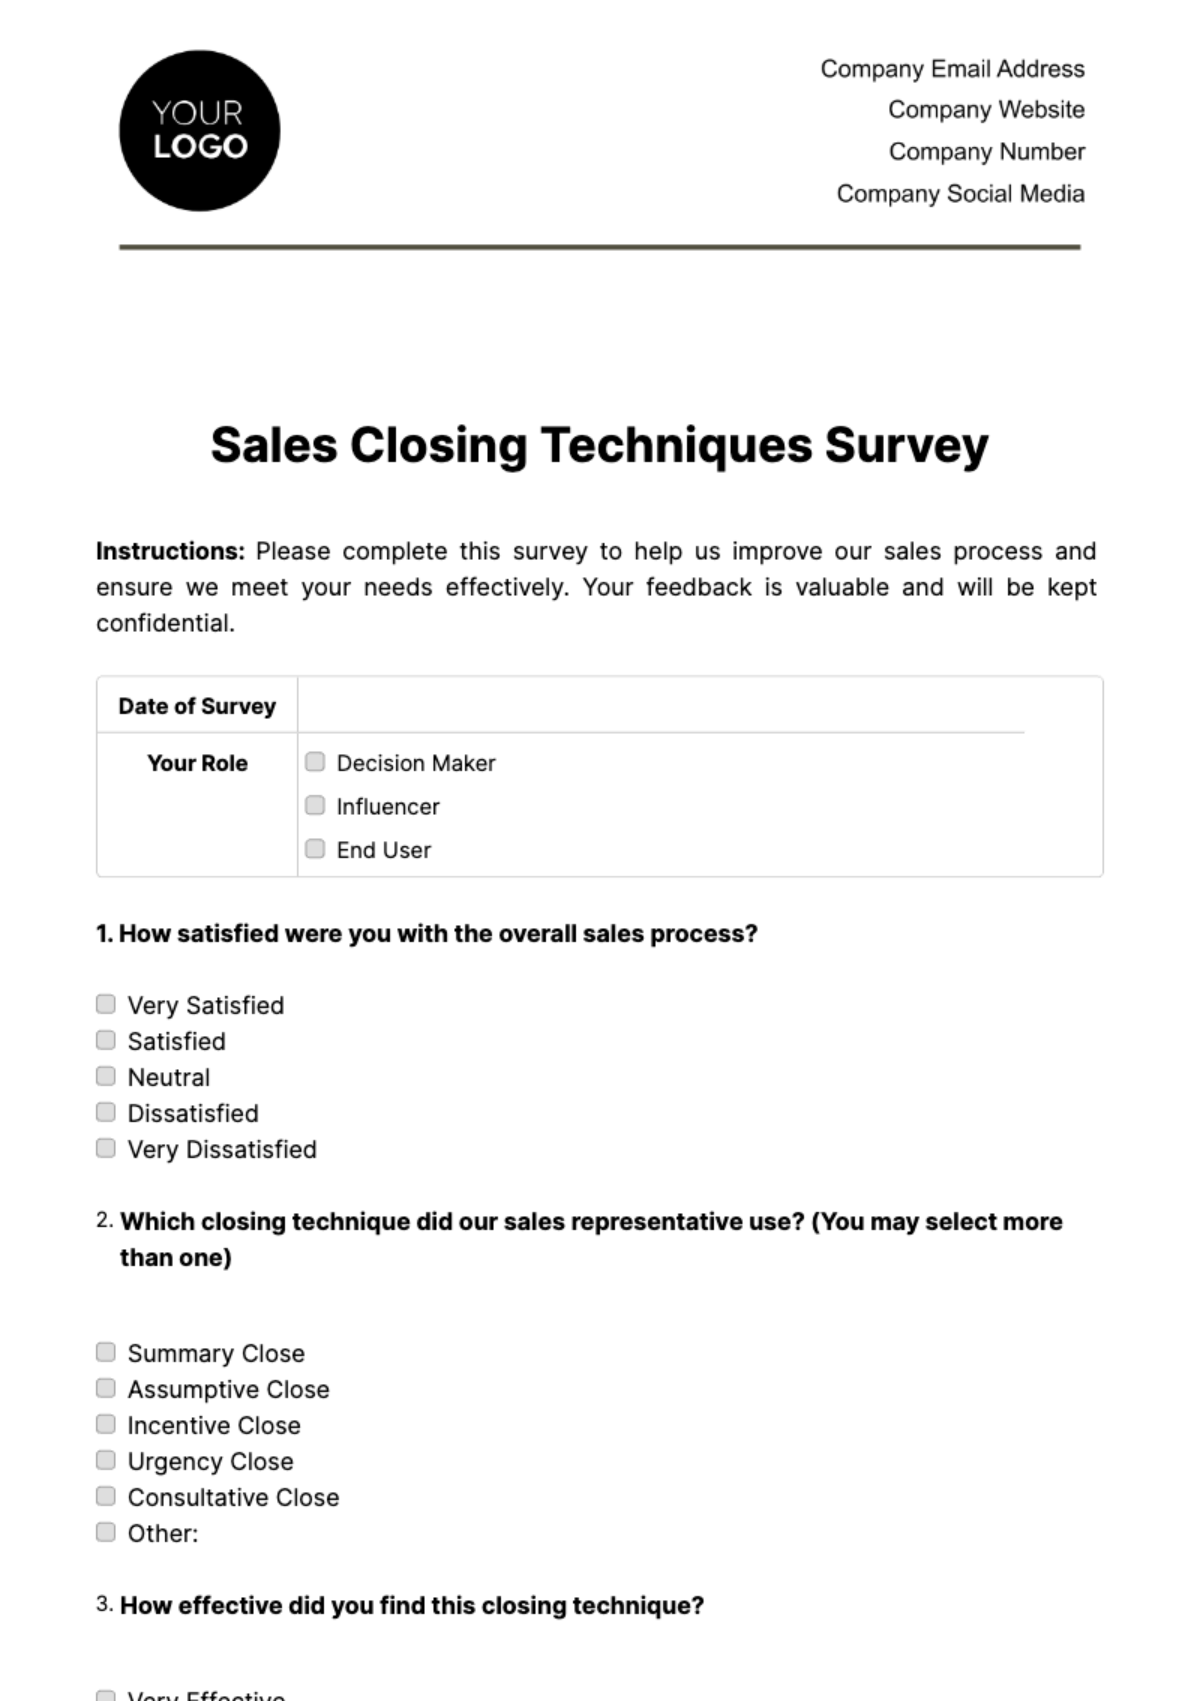 Sales Closing Techniques Survey Template